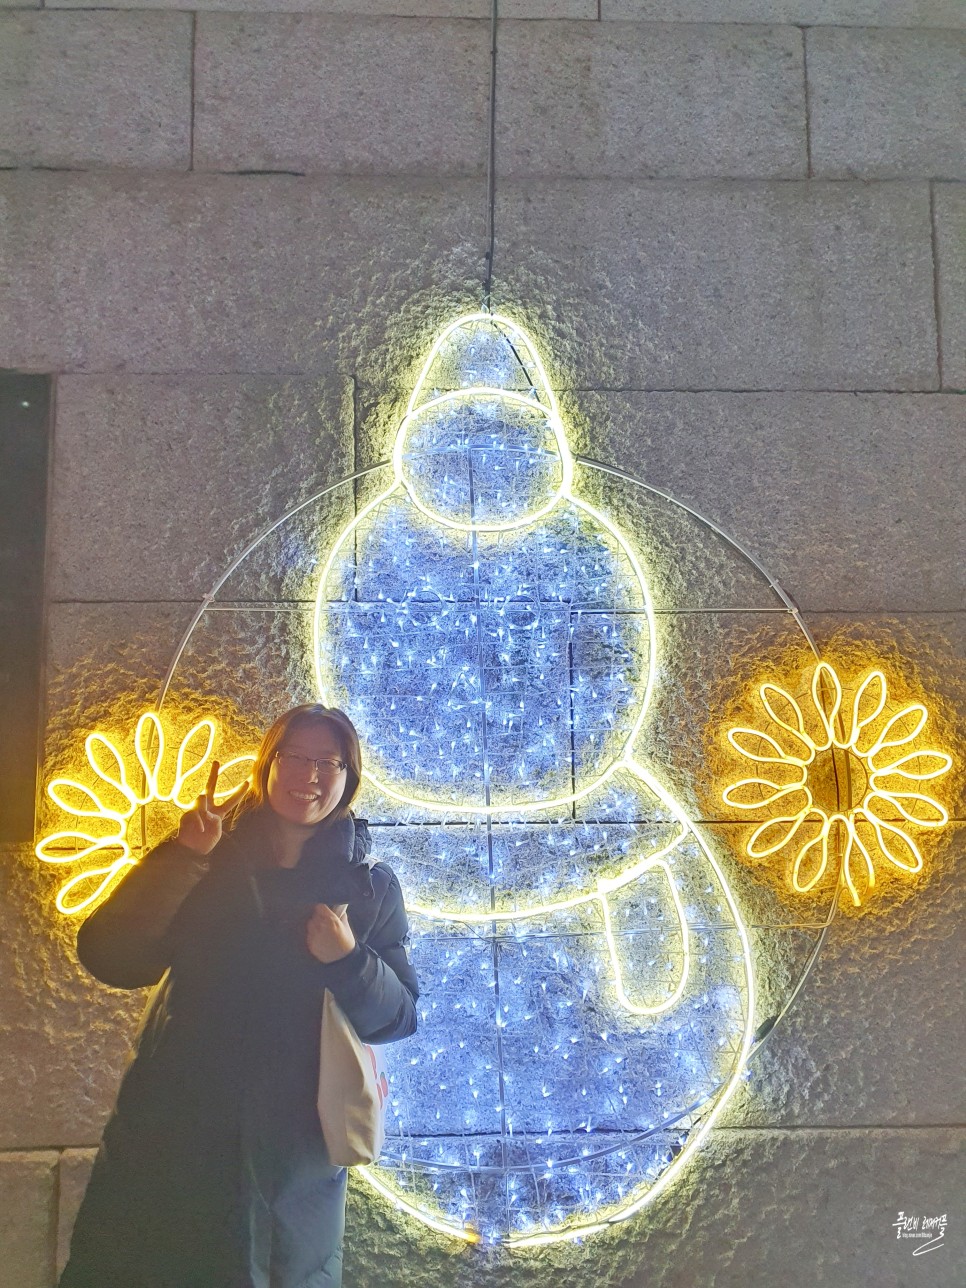 서울 크리스마스 데이트 청계천 빛초롱축제 광화문광장 크리스마스마켓 볼거리